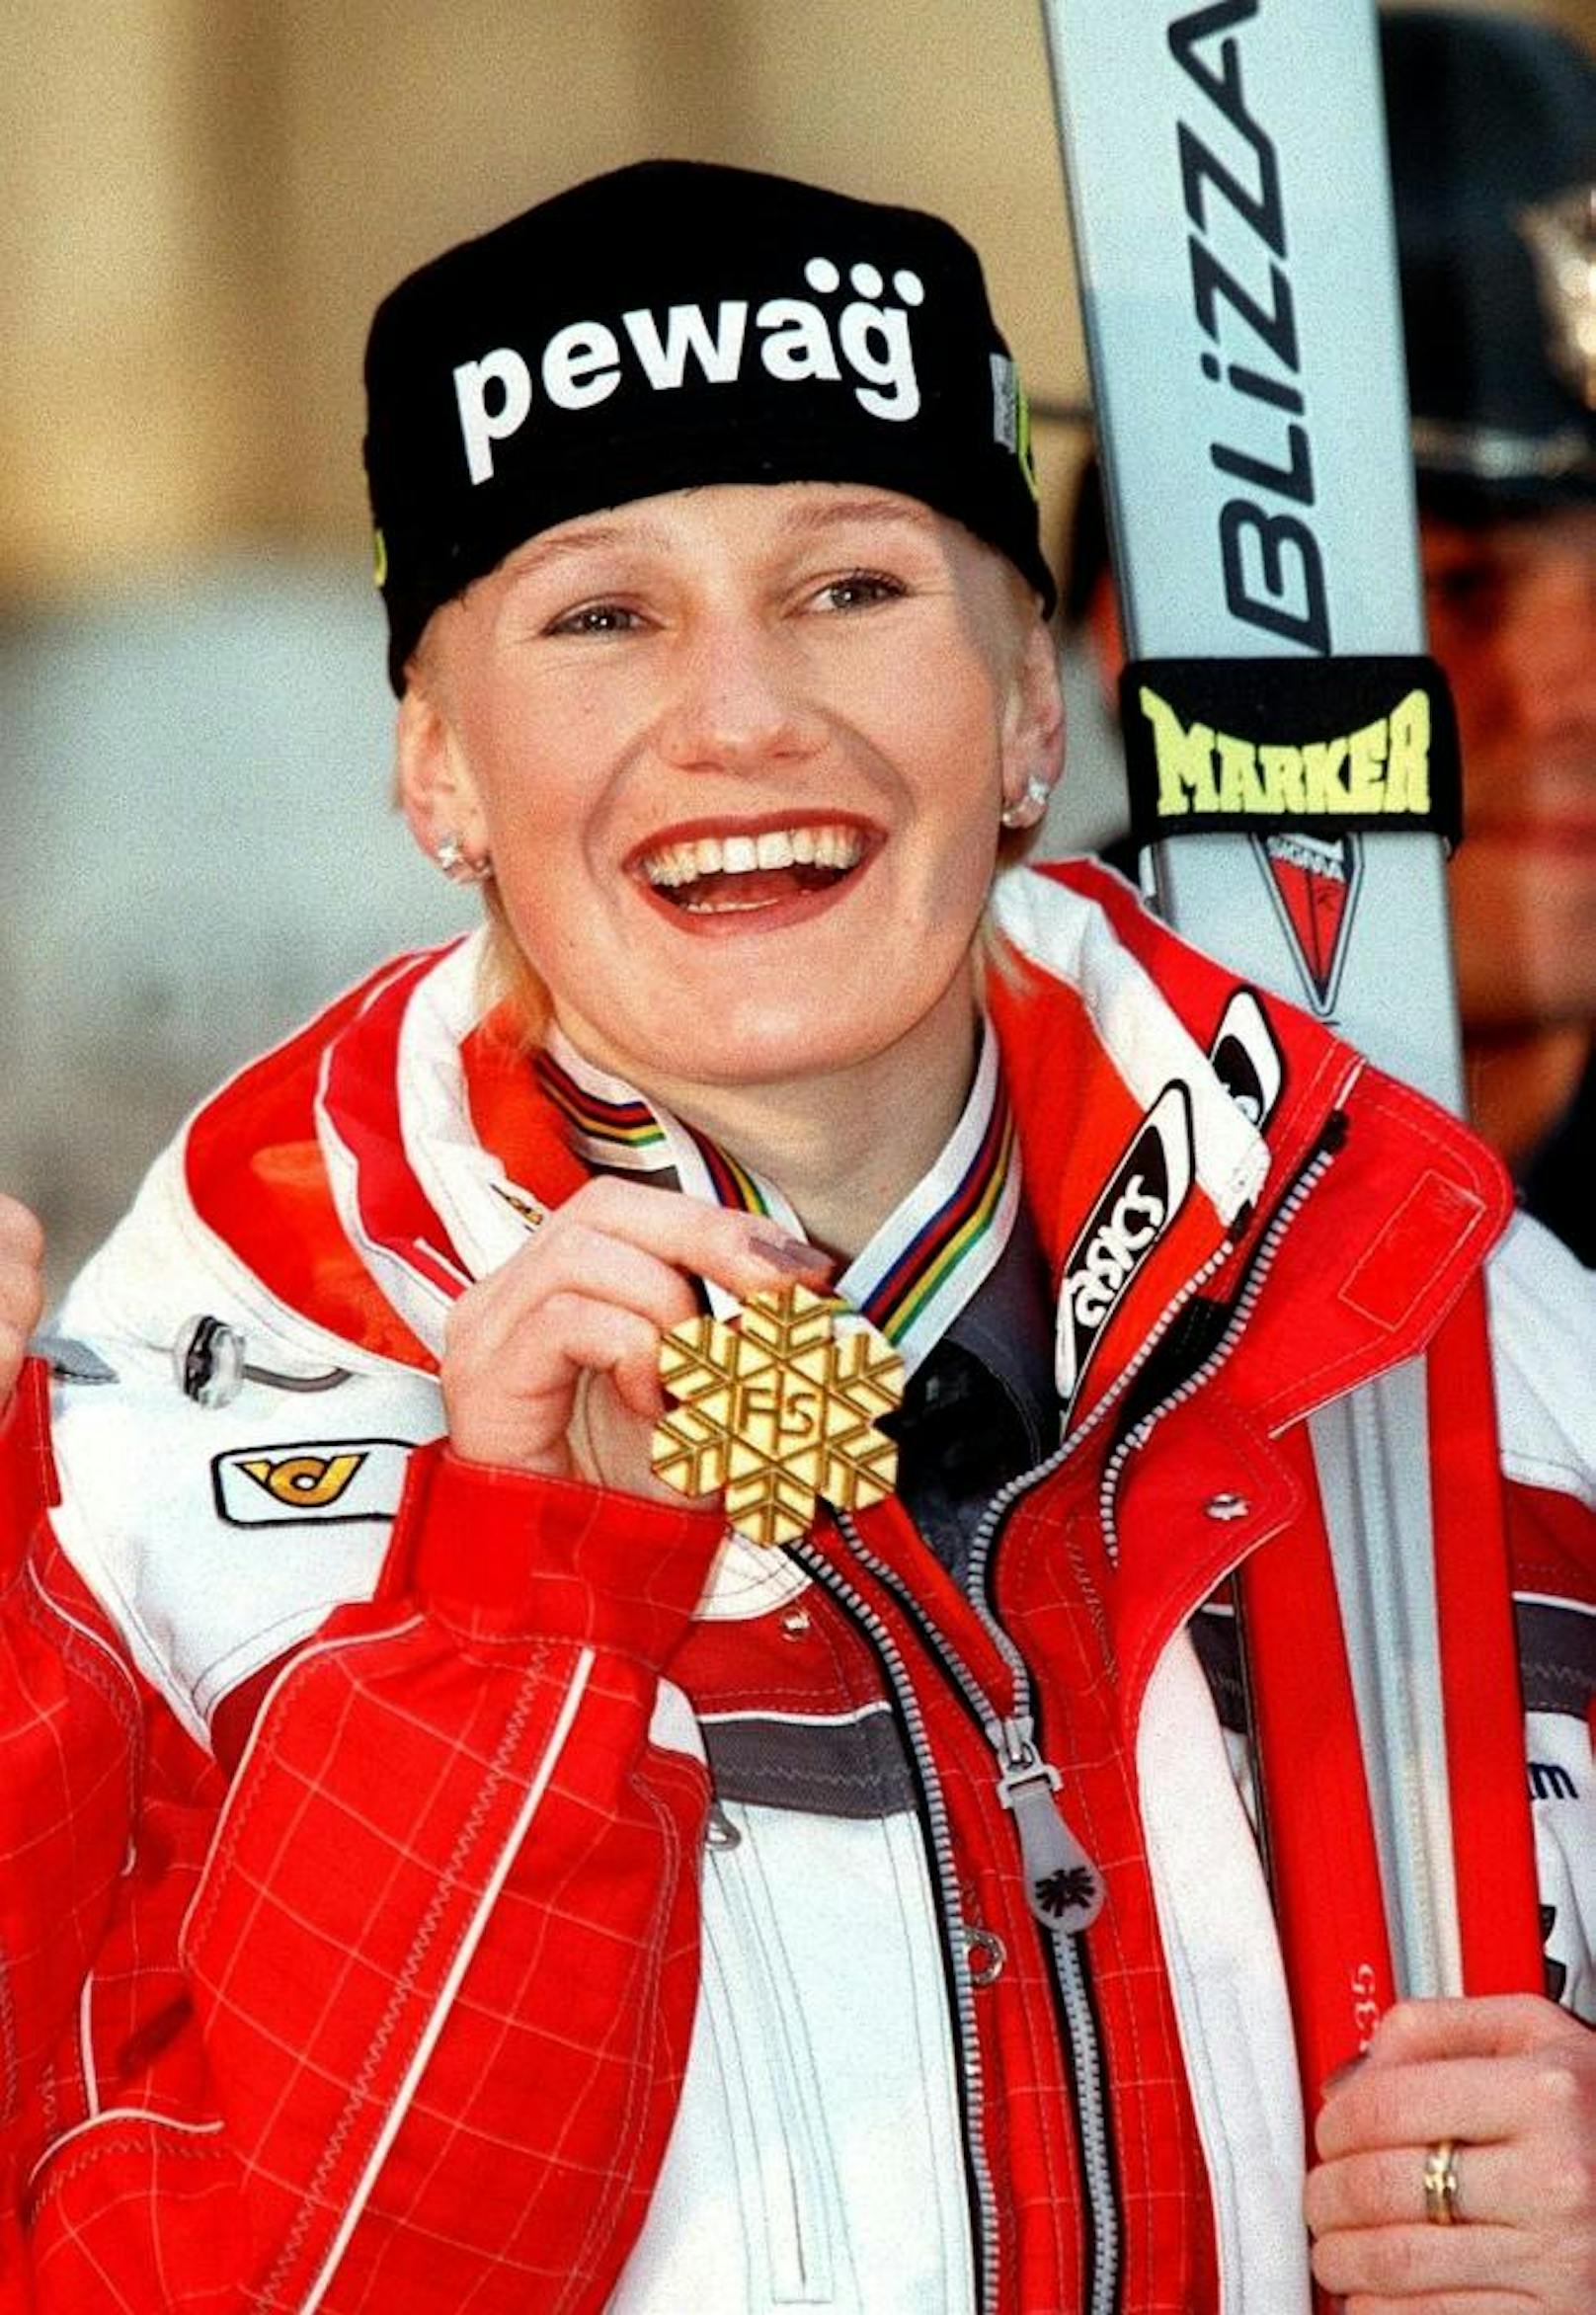 <b>Platz 6: Renate Götschl (3 x Gold, 4 x Silber, 2 x Bronze)</b>
Die "Speed-Queen" legte 1997 mit Kombi-Gold los. Zwei Jahre später jubelte sie in Vail über den Abfahrts-Titel. Es folgten vier Vize-WM-Titel: 1999 im Super-G und der Kombi, 2001 (St. Anton) in der Abfahrt, 2005 (Santa Caterina) mit dem Team. Im selben Jahr gab es in der Abfahrt Bronze. 2007 in Aare krönte sich Götschl noch mal zur Team-Weltmeisterin und holte Bronze im Super-G.